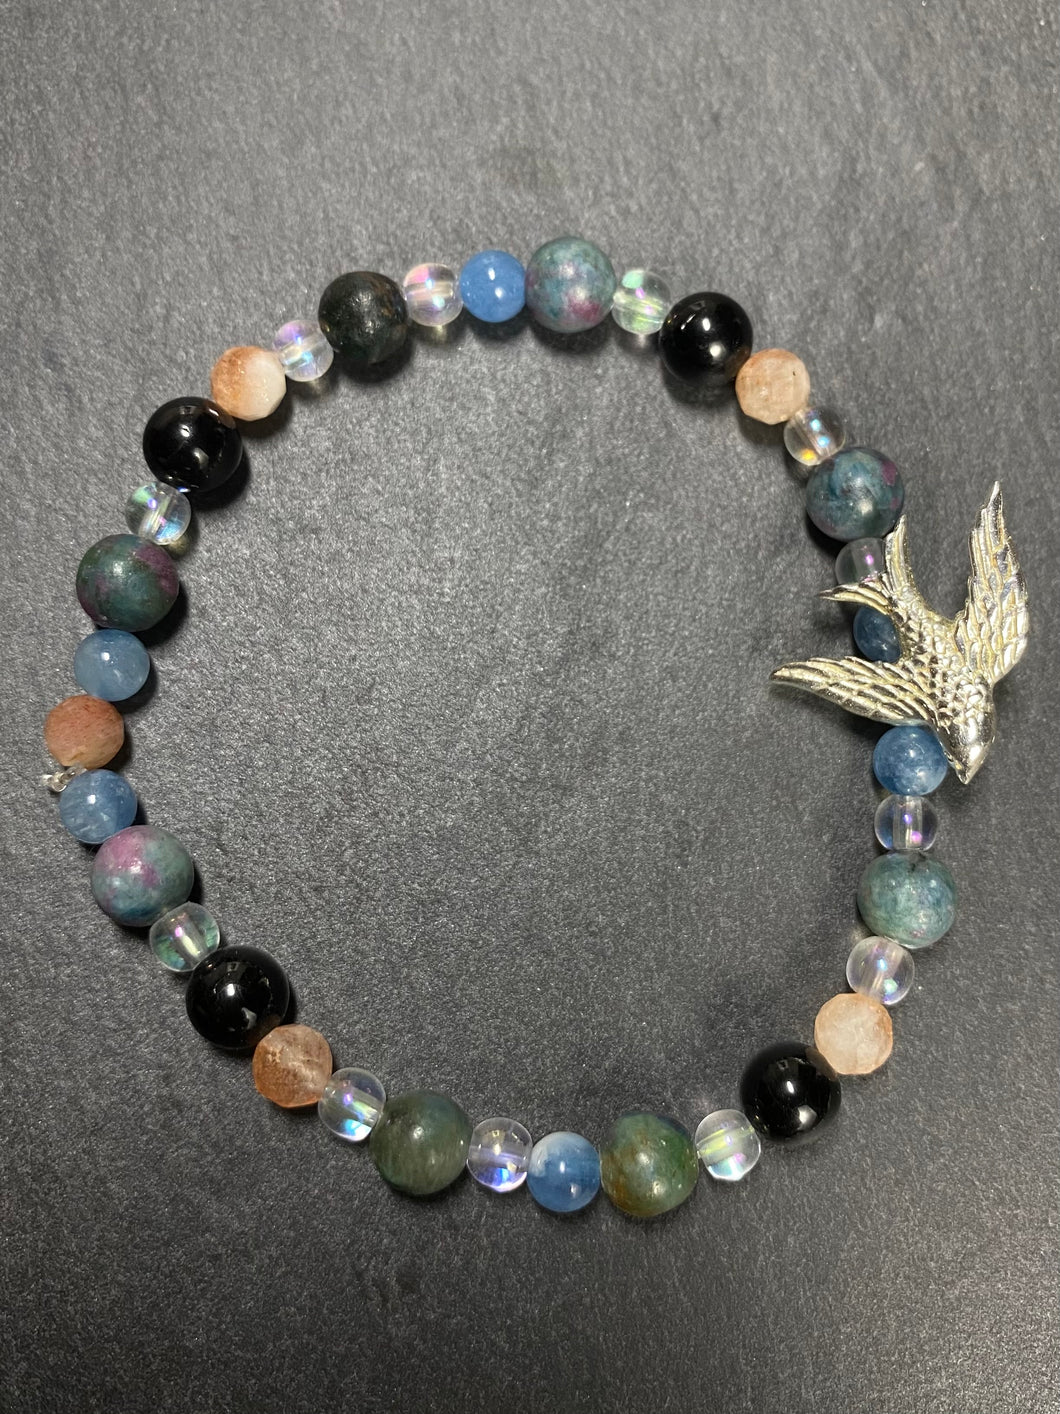 Armband mit Angel Aura, Sonnenstein, Aquamarin, Schörl und Rubin-Disthen mit einem silbernen Vogel